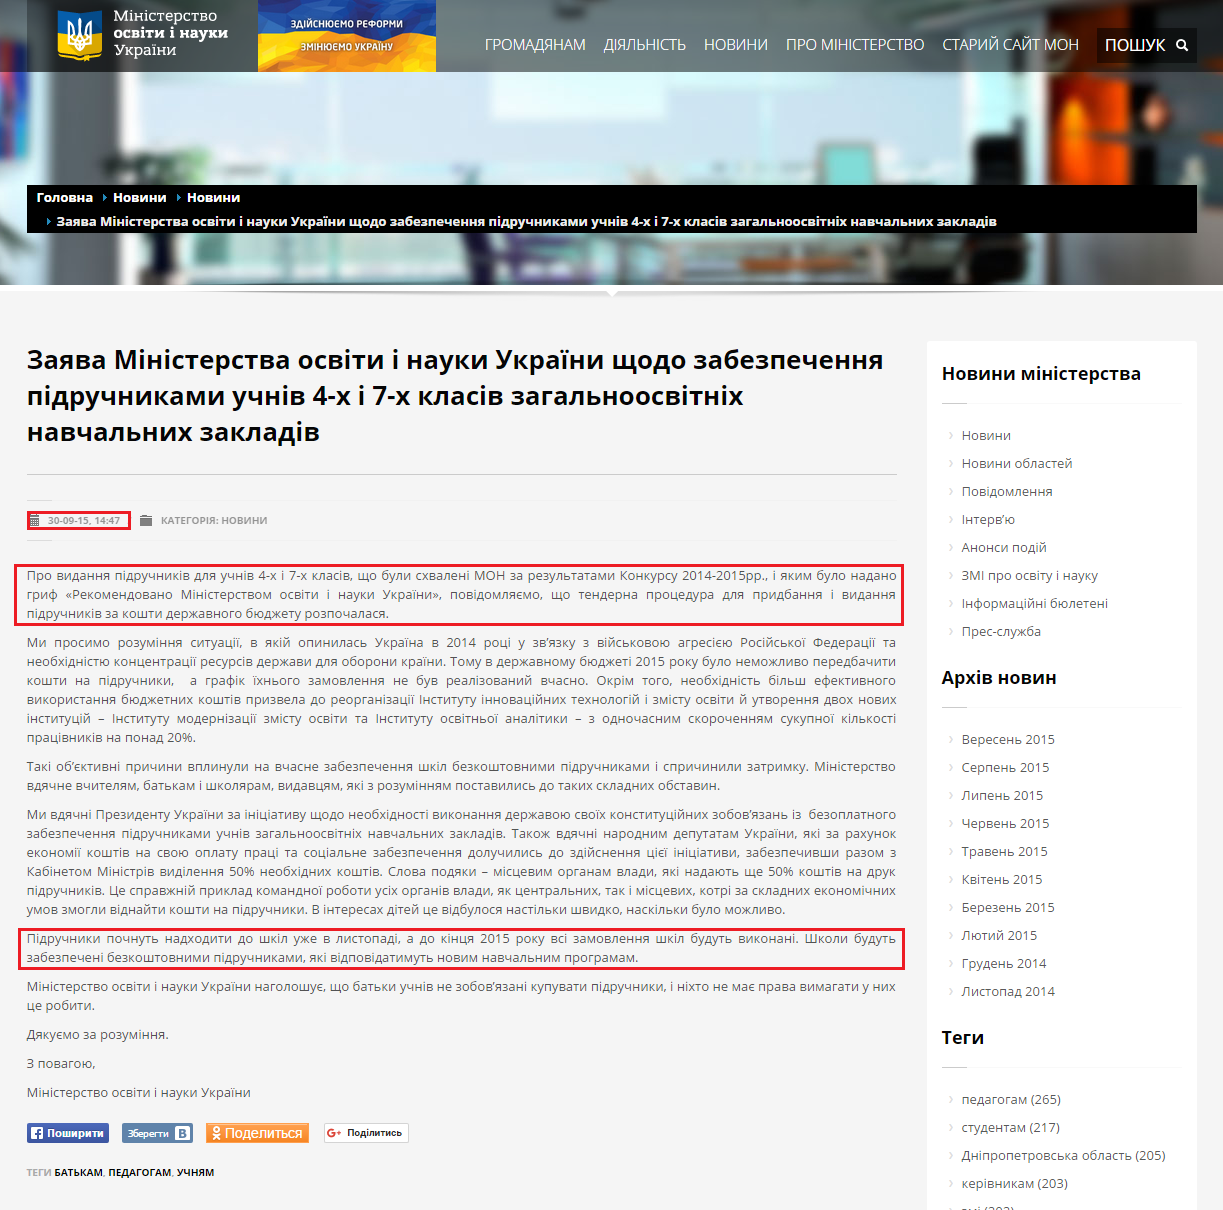 http://mon.gov.ua/usi-novivni/novini/2015/09/30/zayava-ministerstva-osviti-i-nauki-ukrayini-shhodo-zabezpechenny/